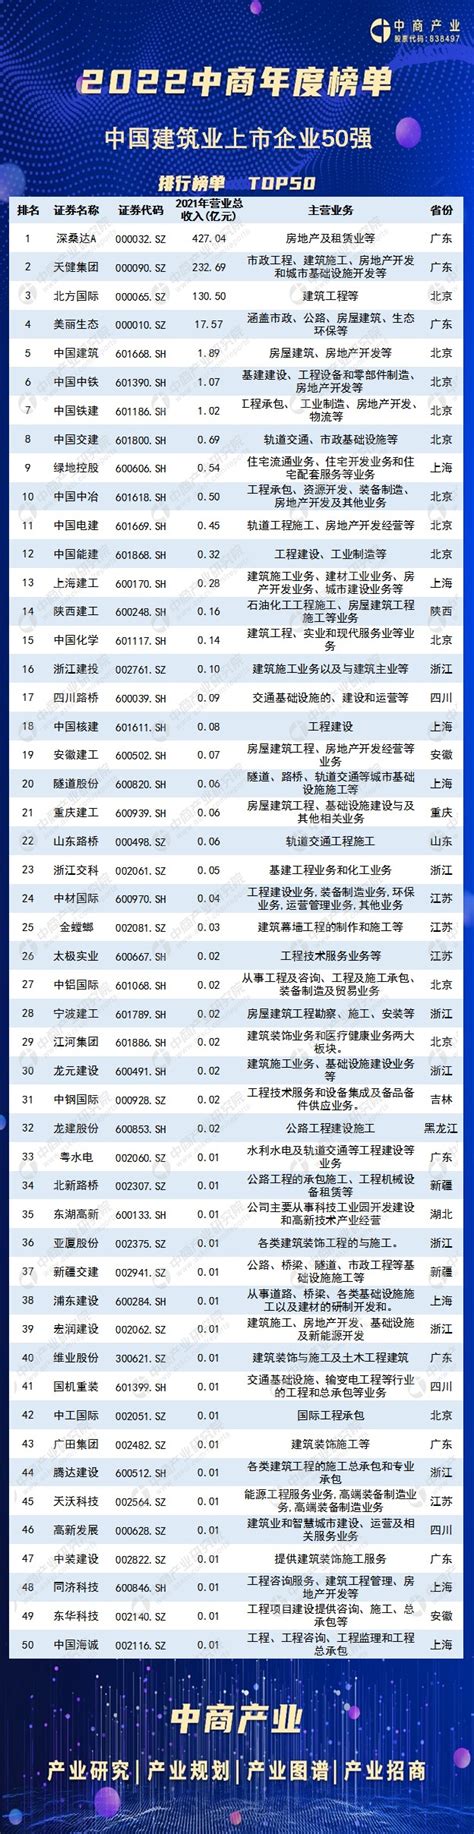 2021年中国建筑行业上市公司营业收入排行榜_财富号_东方财富网